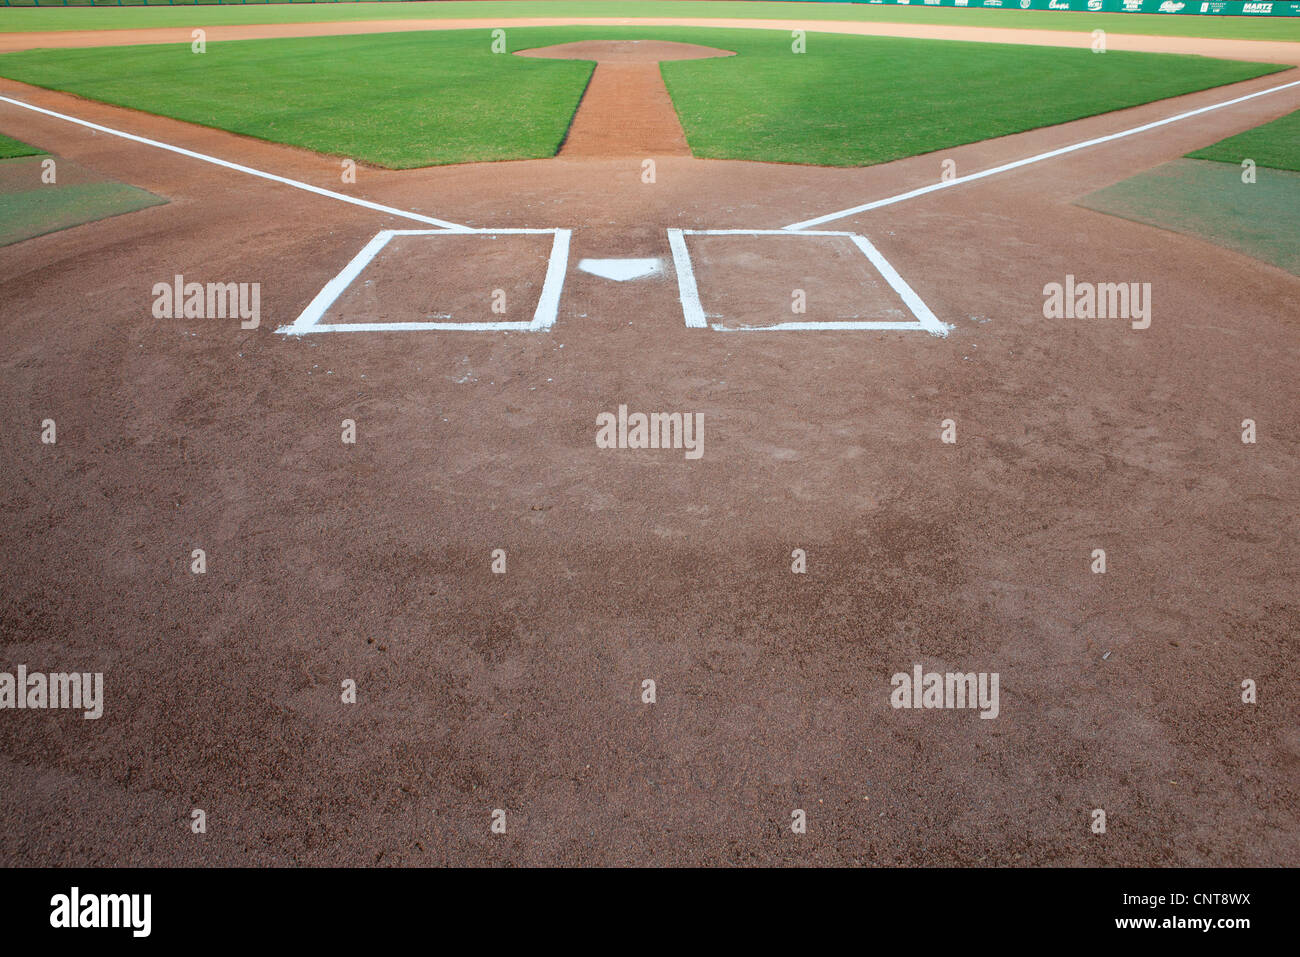 Baseball diamond and home plate Stock Photo